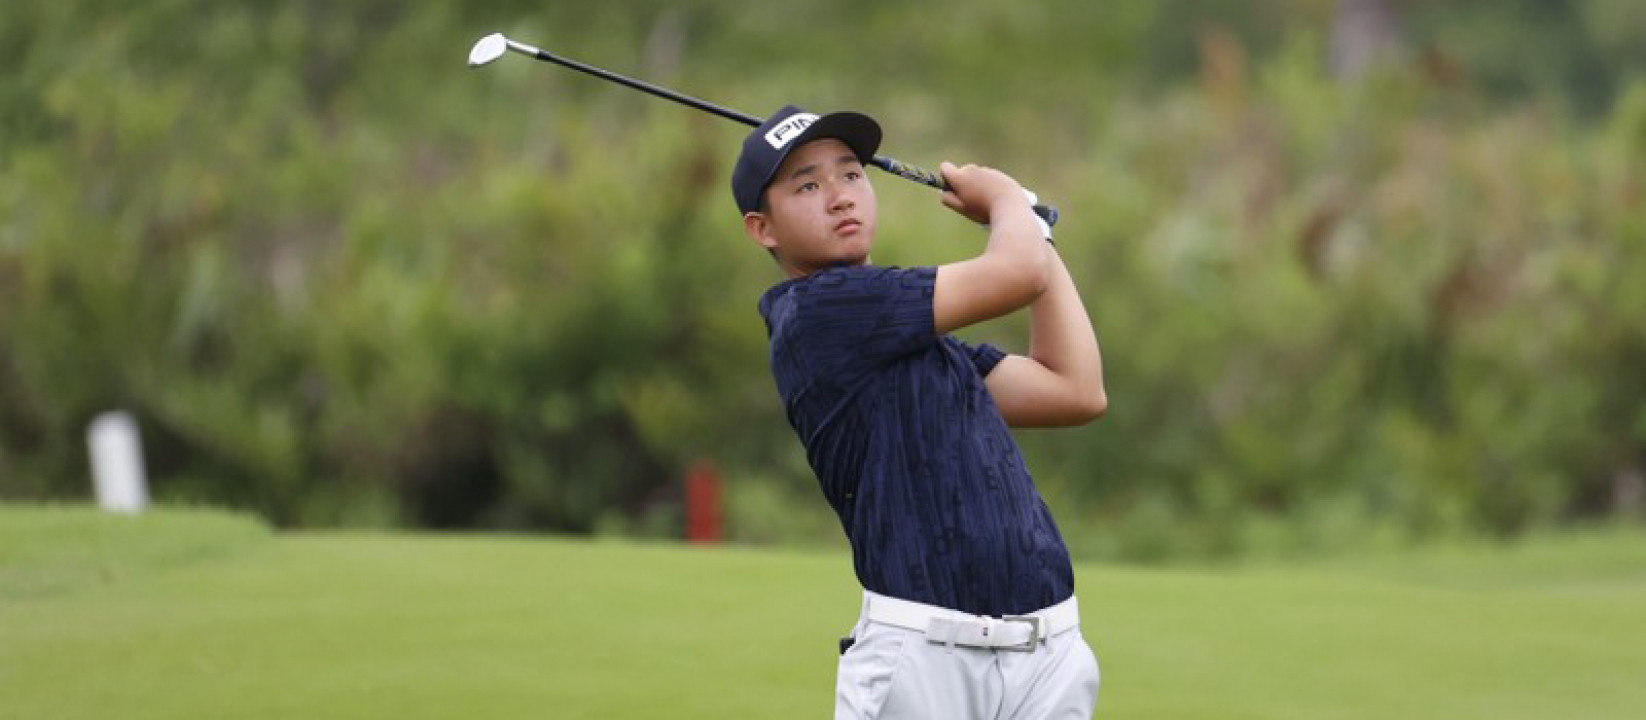 Nguyễn Anh Minh xác nhận tham gia U.S Amateur Championship